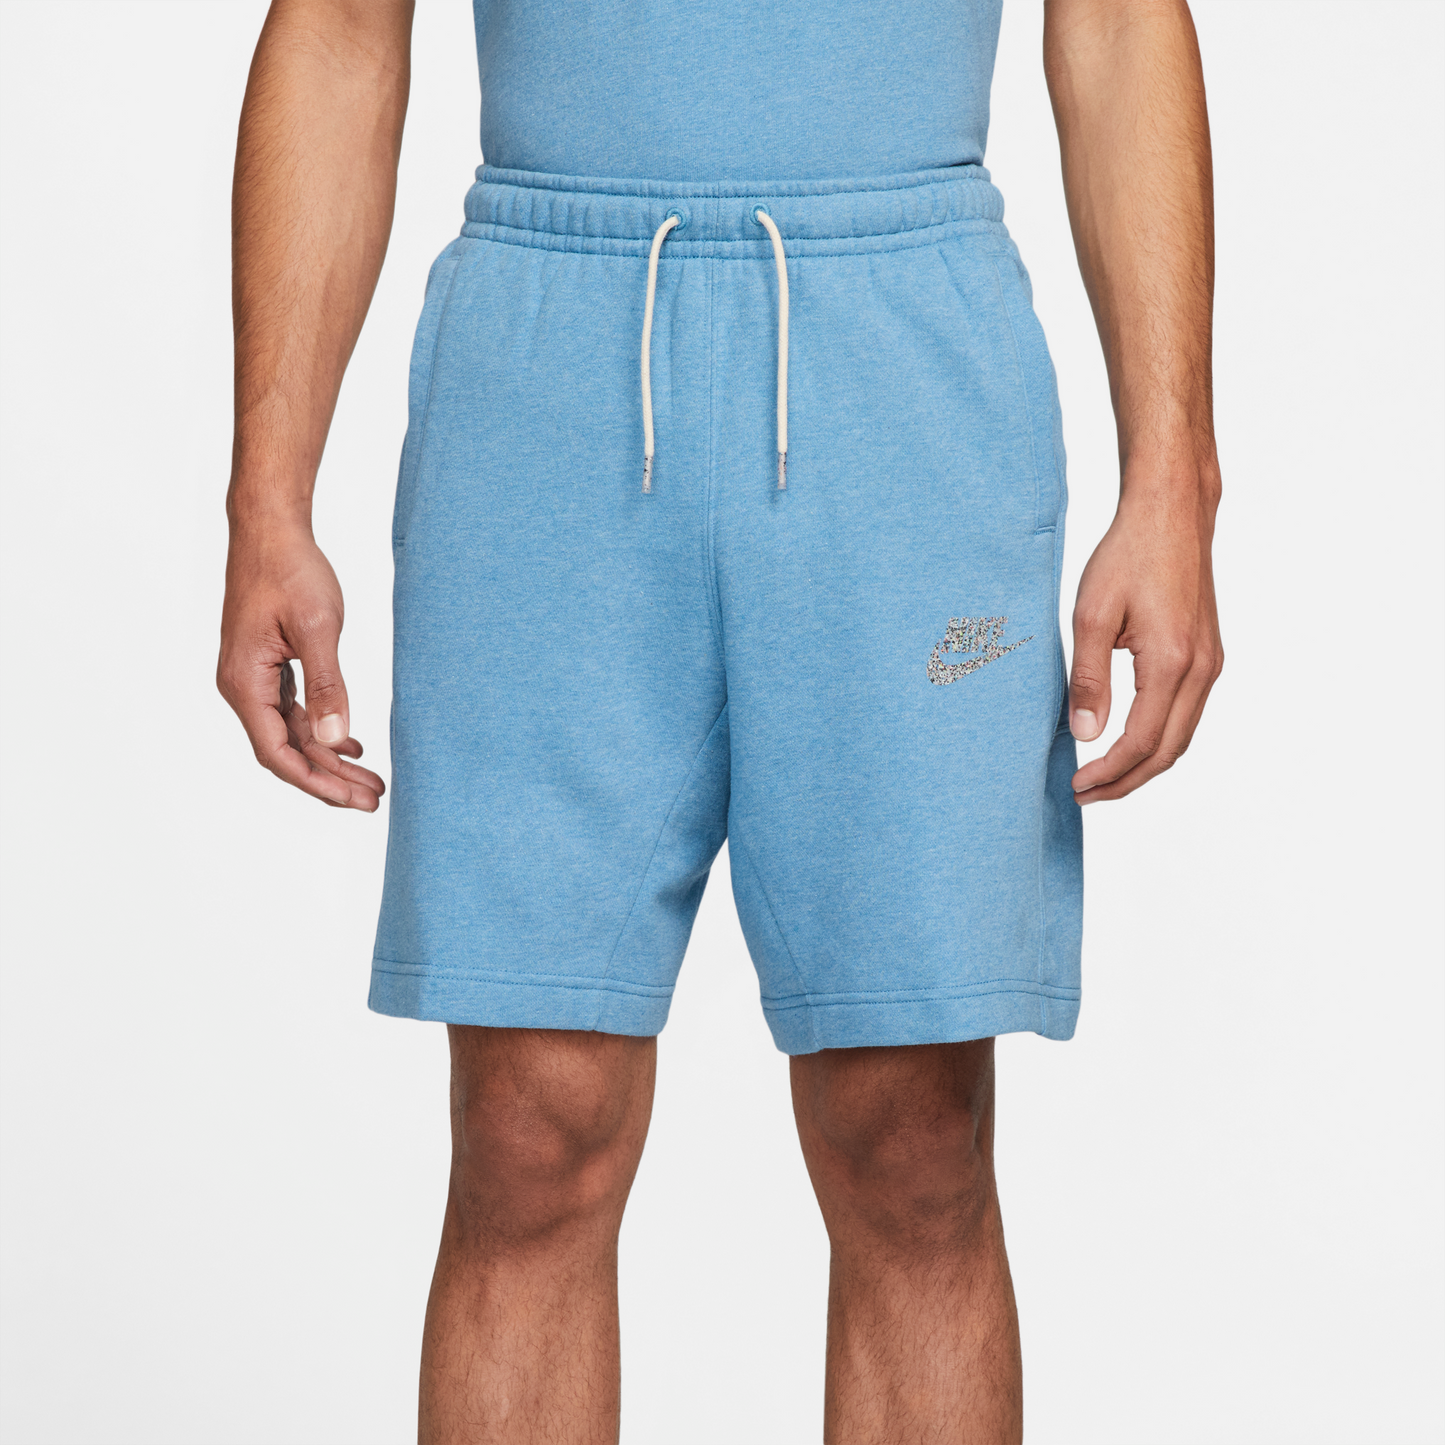 Nike Sportswear Revival Fleece Short